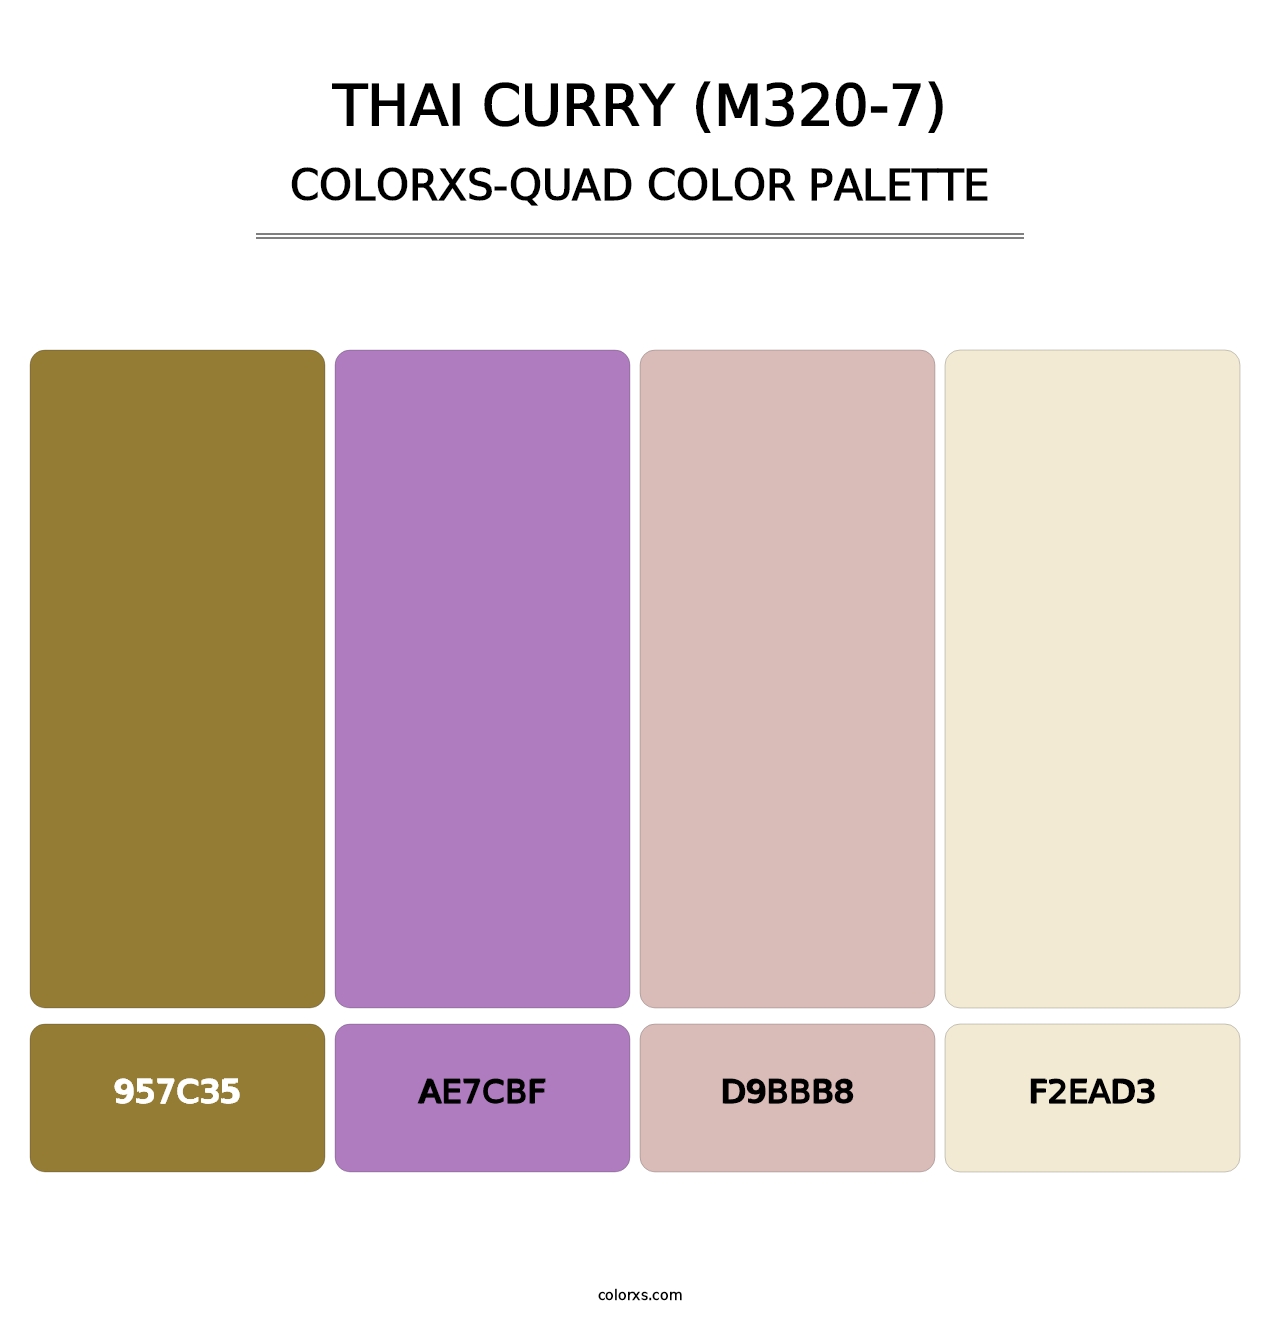 Thai Curry (M320-7) - Colorxs Quad Palette